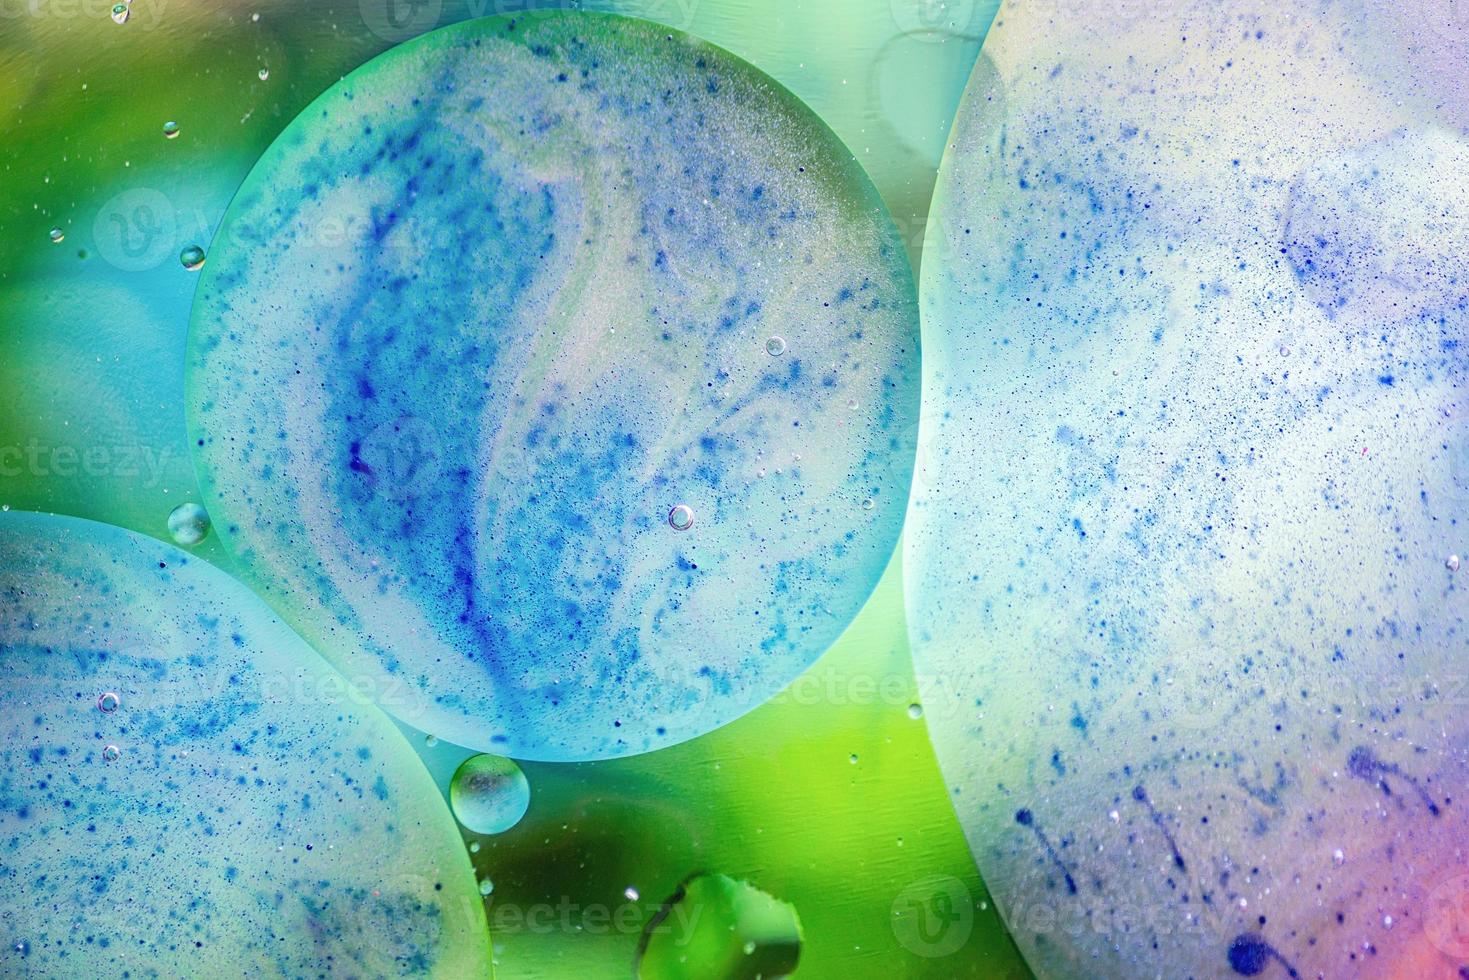 abstrait avec des bulles d'huile sur la surface de l'eau bleue et verte photo